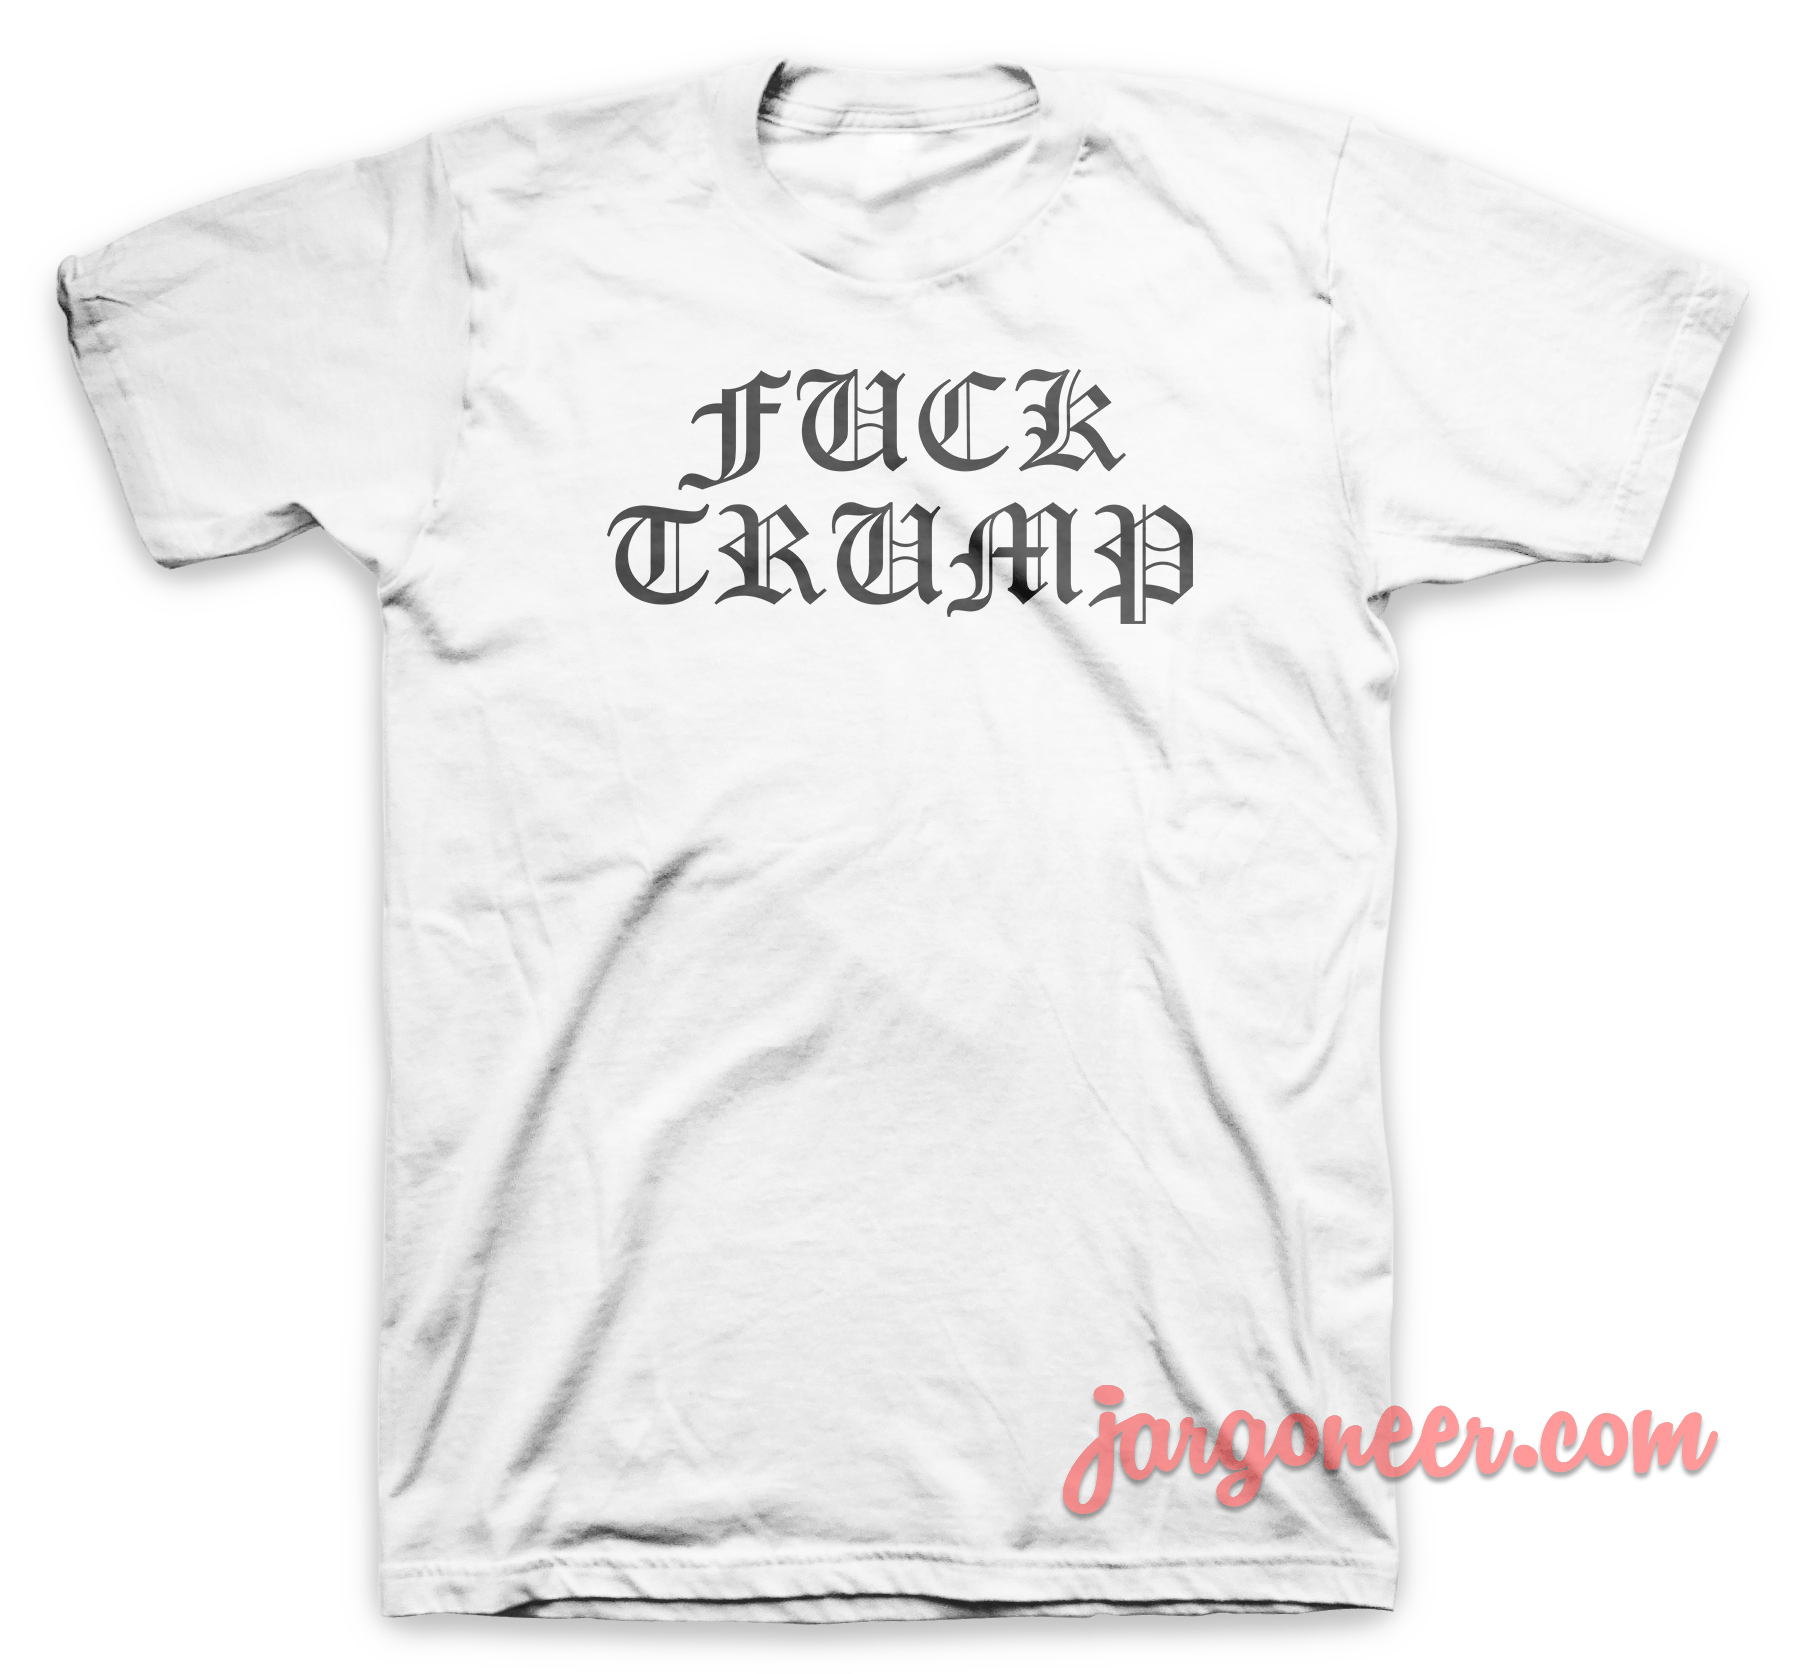 Fuck Trump White T Shirt - Shop Unique Graphic Cool Shirt Designs